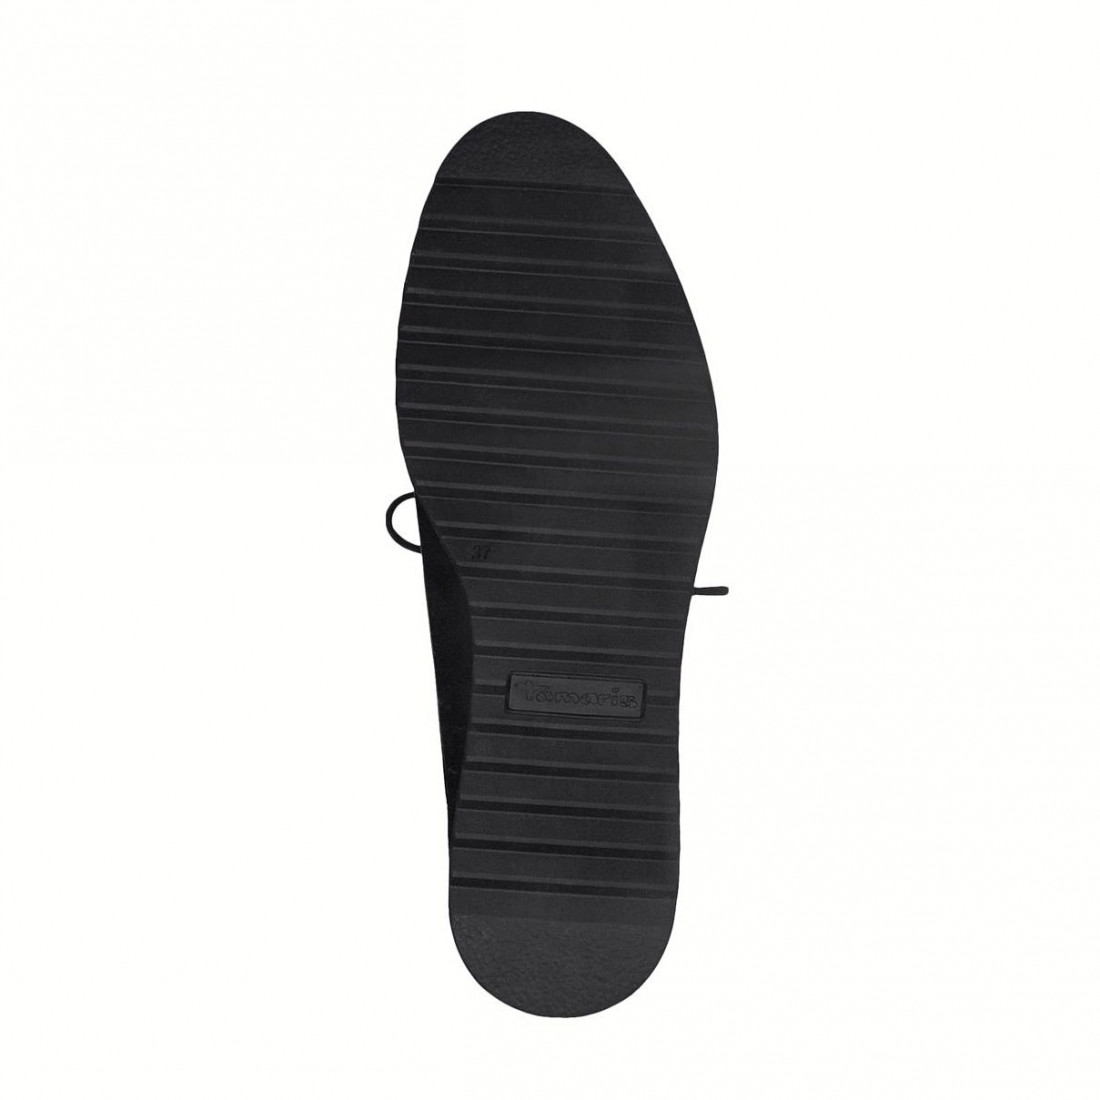 Zapatos de mujer Tamaris con cordones negros y cuña baja